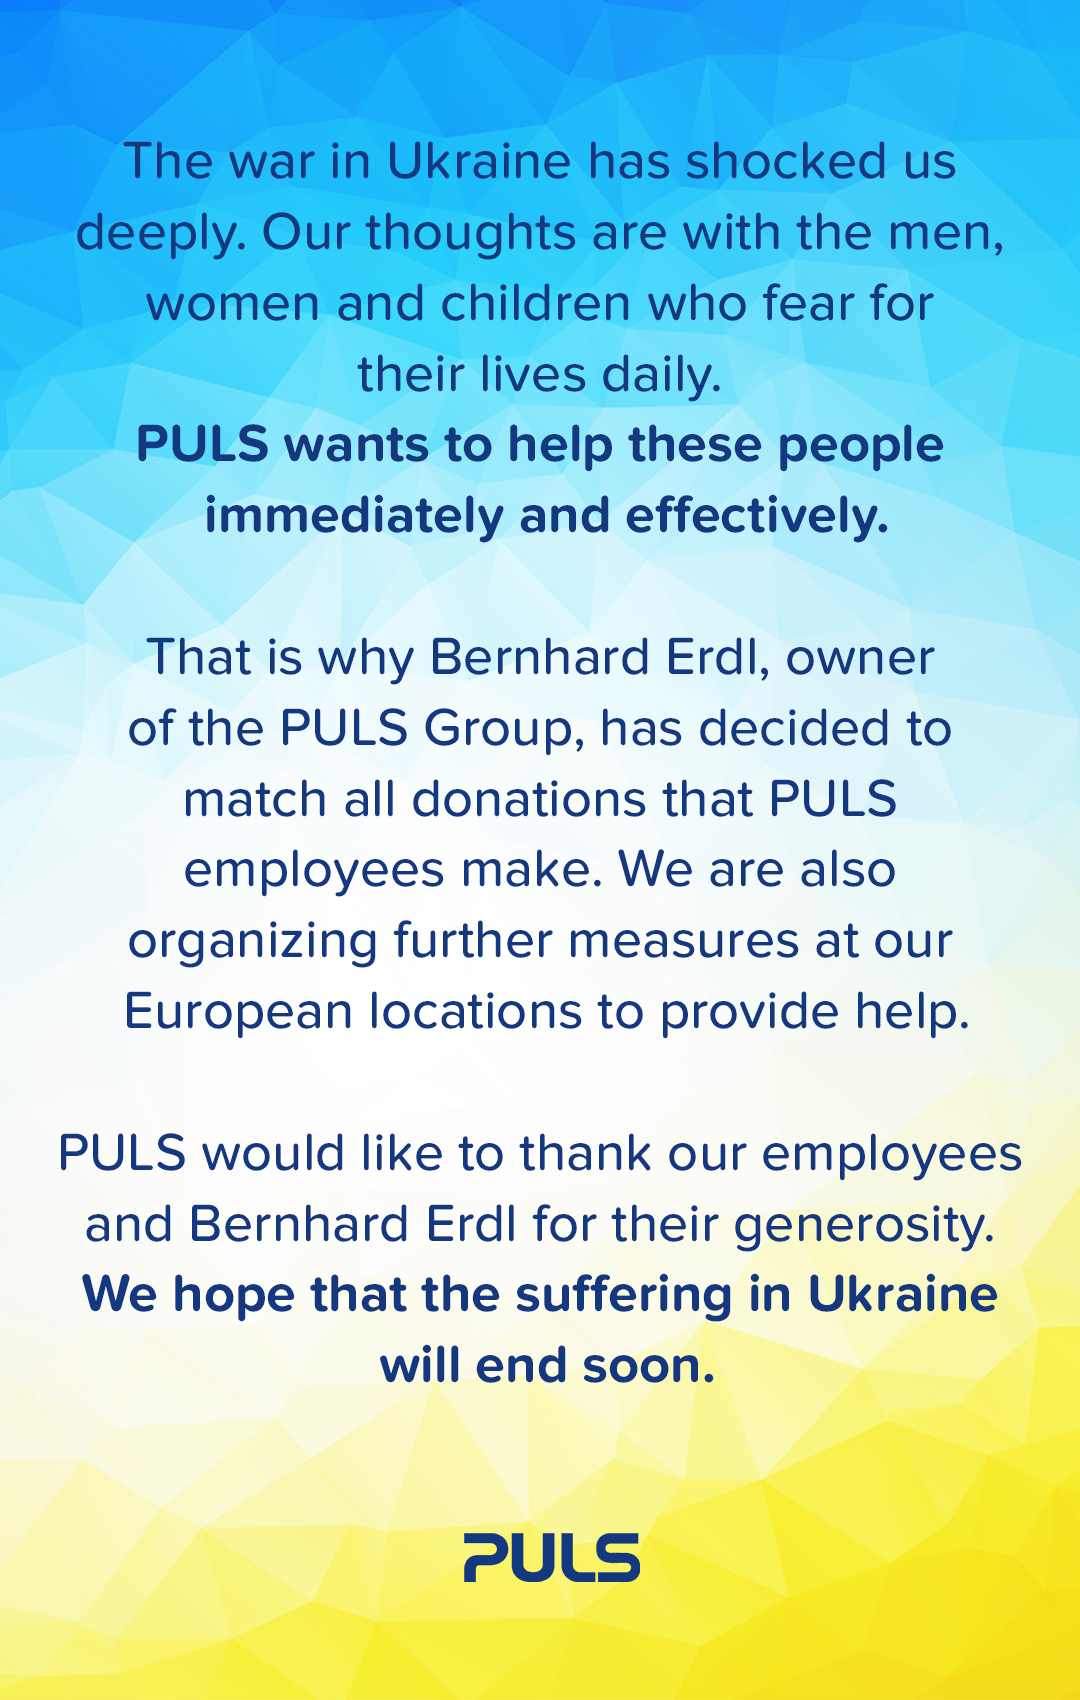 PULS employees help people in Ukraine.